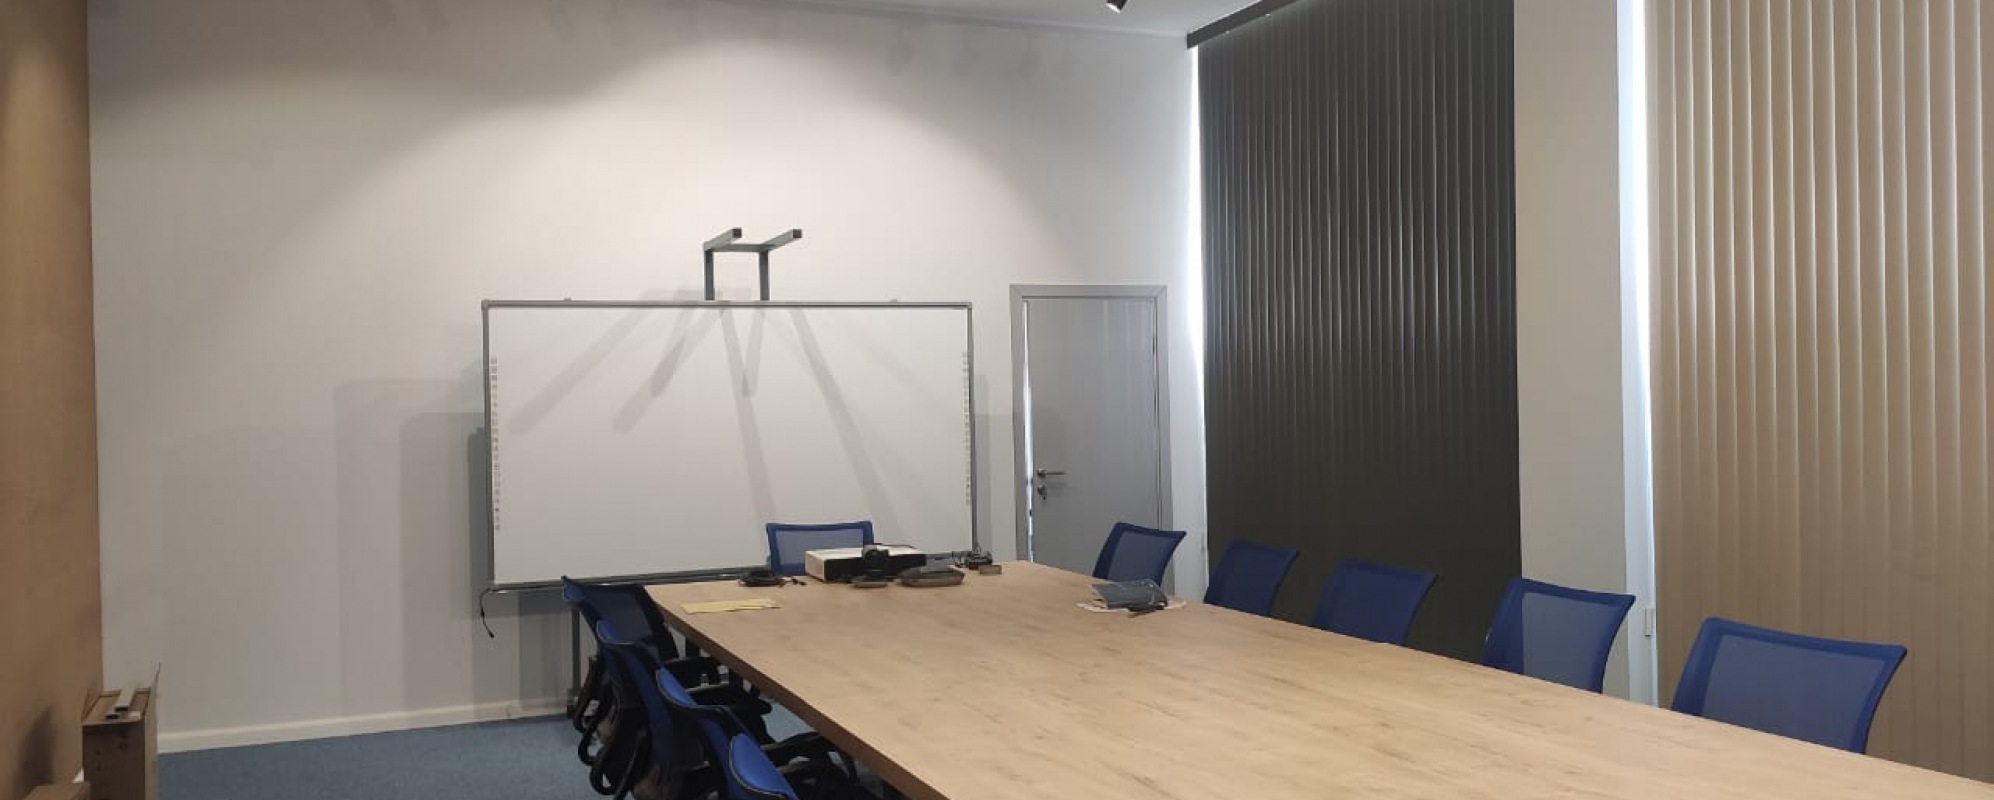 Фотографии комнаты для переговоров Переговорная комната в Технопарке Нобель